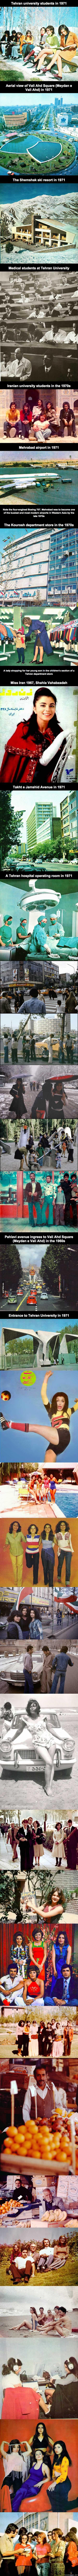 Iran 60- ja 70-luvulla - Melko erilaiset meiningit kuin nykyään. Tämä kaikki ennen vuoden 1979 islamistista vallankumousta.